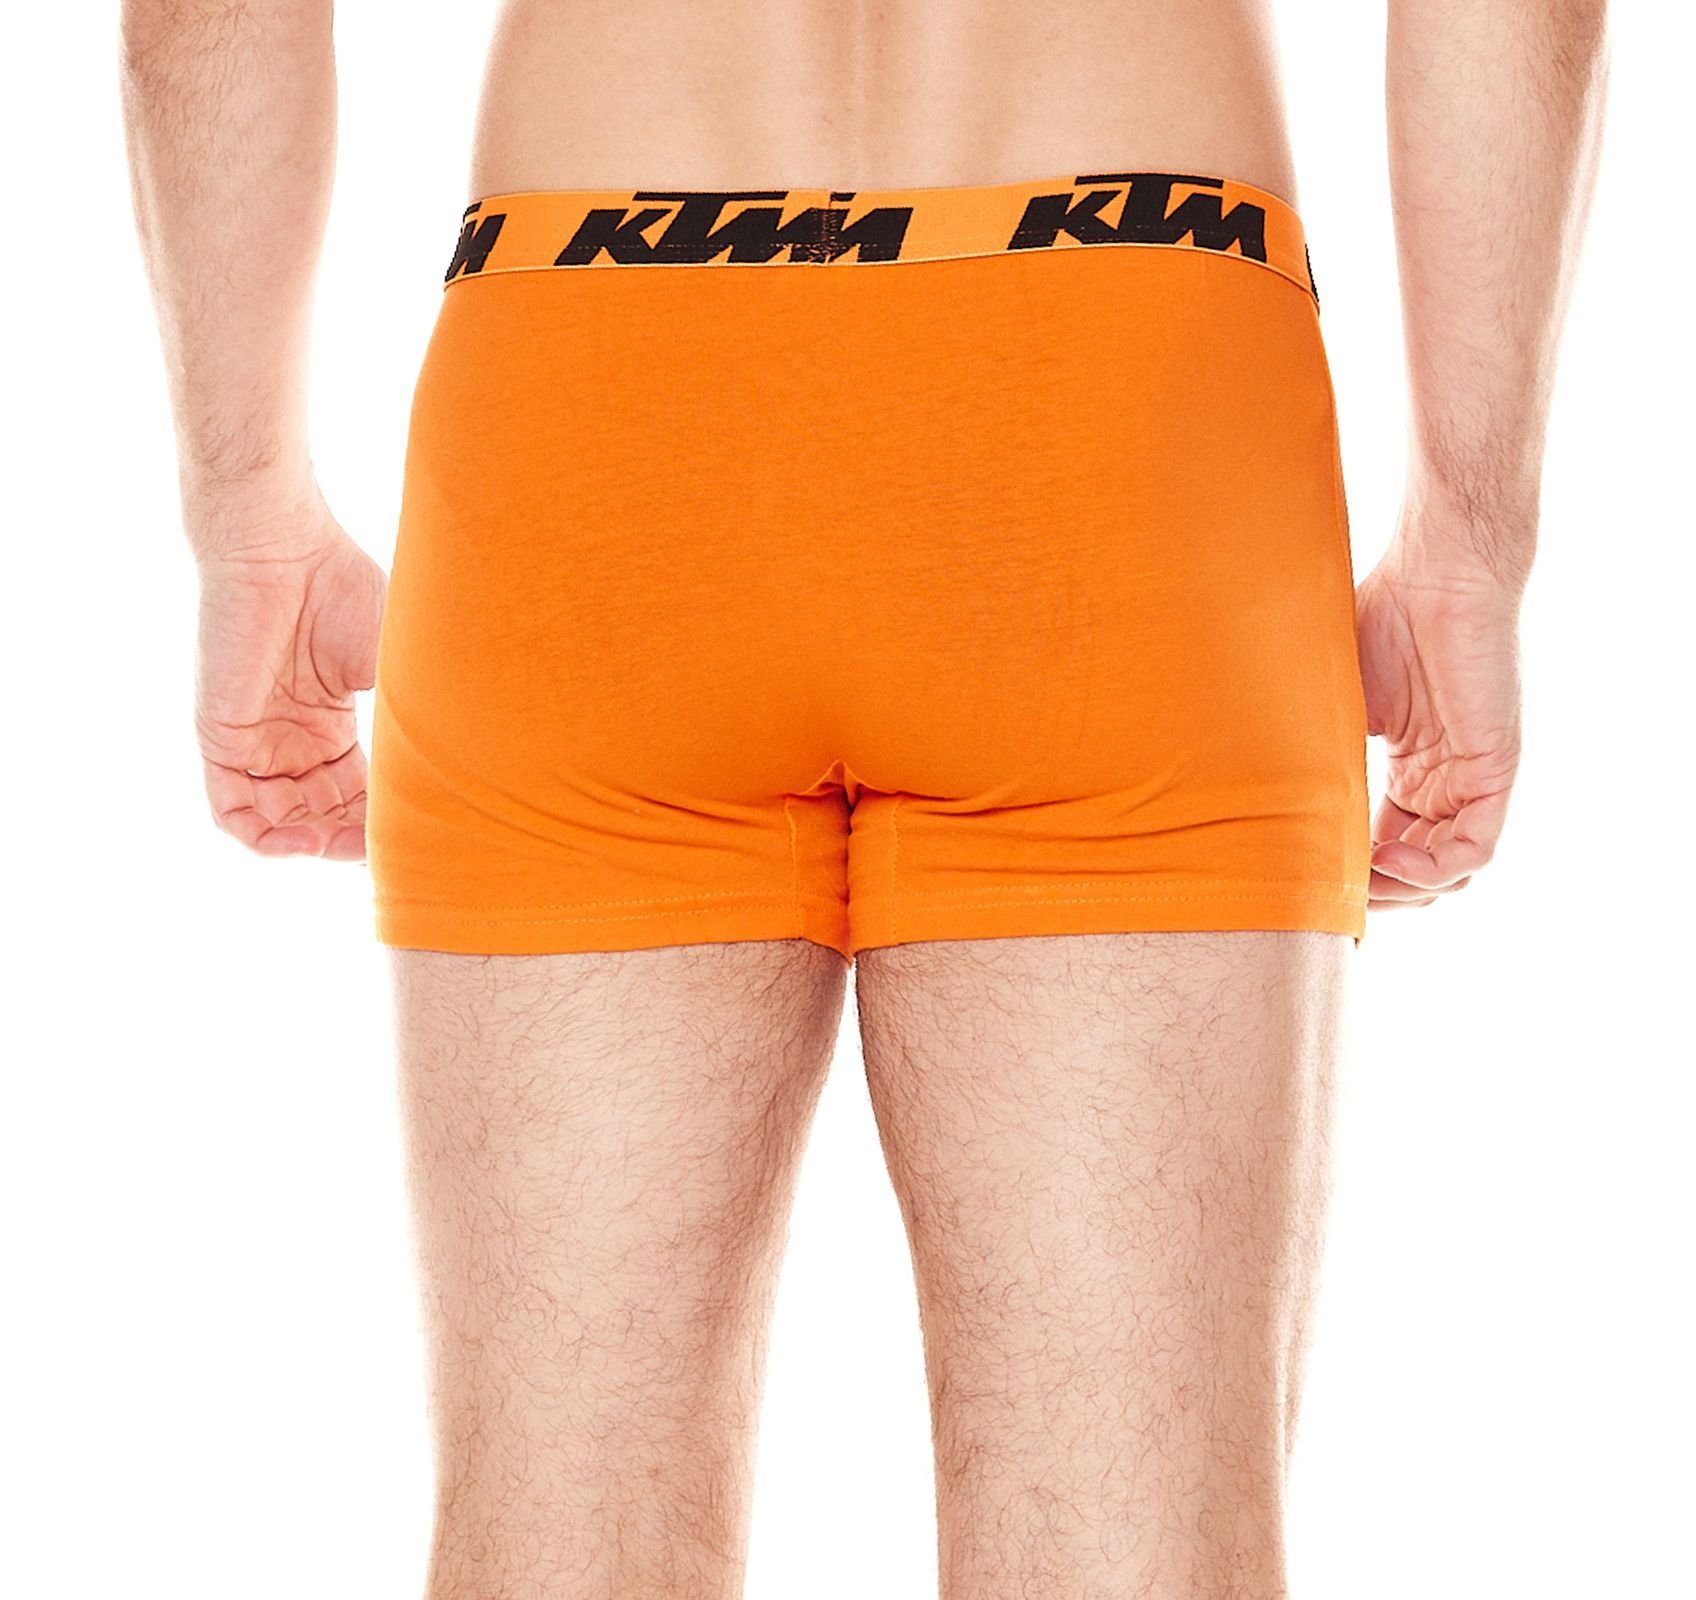 2er GOR Dunkelgrau/Orange / Unterhose 1BCX2ASS2D Grey KTM Unterwäsche Pack knallige Boxershorts Logoprint Orange2 Dark Herren KTM mit Boxershorts